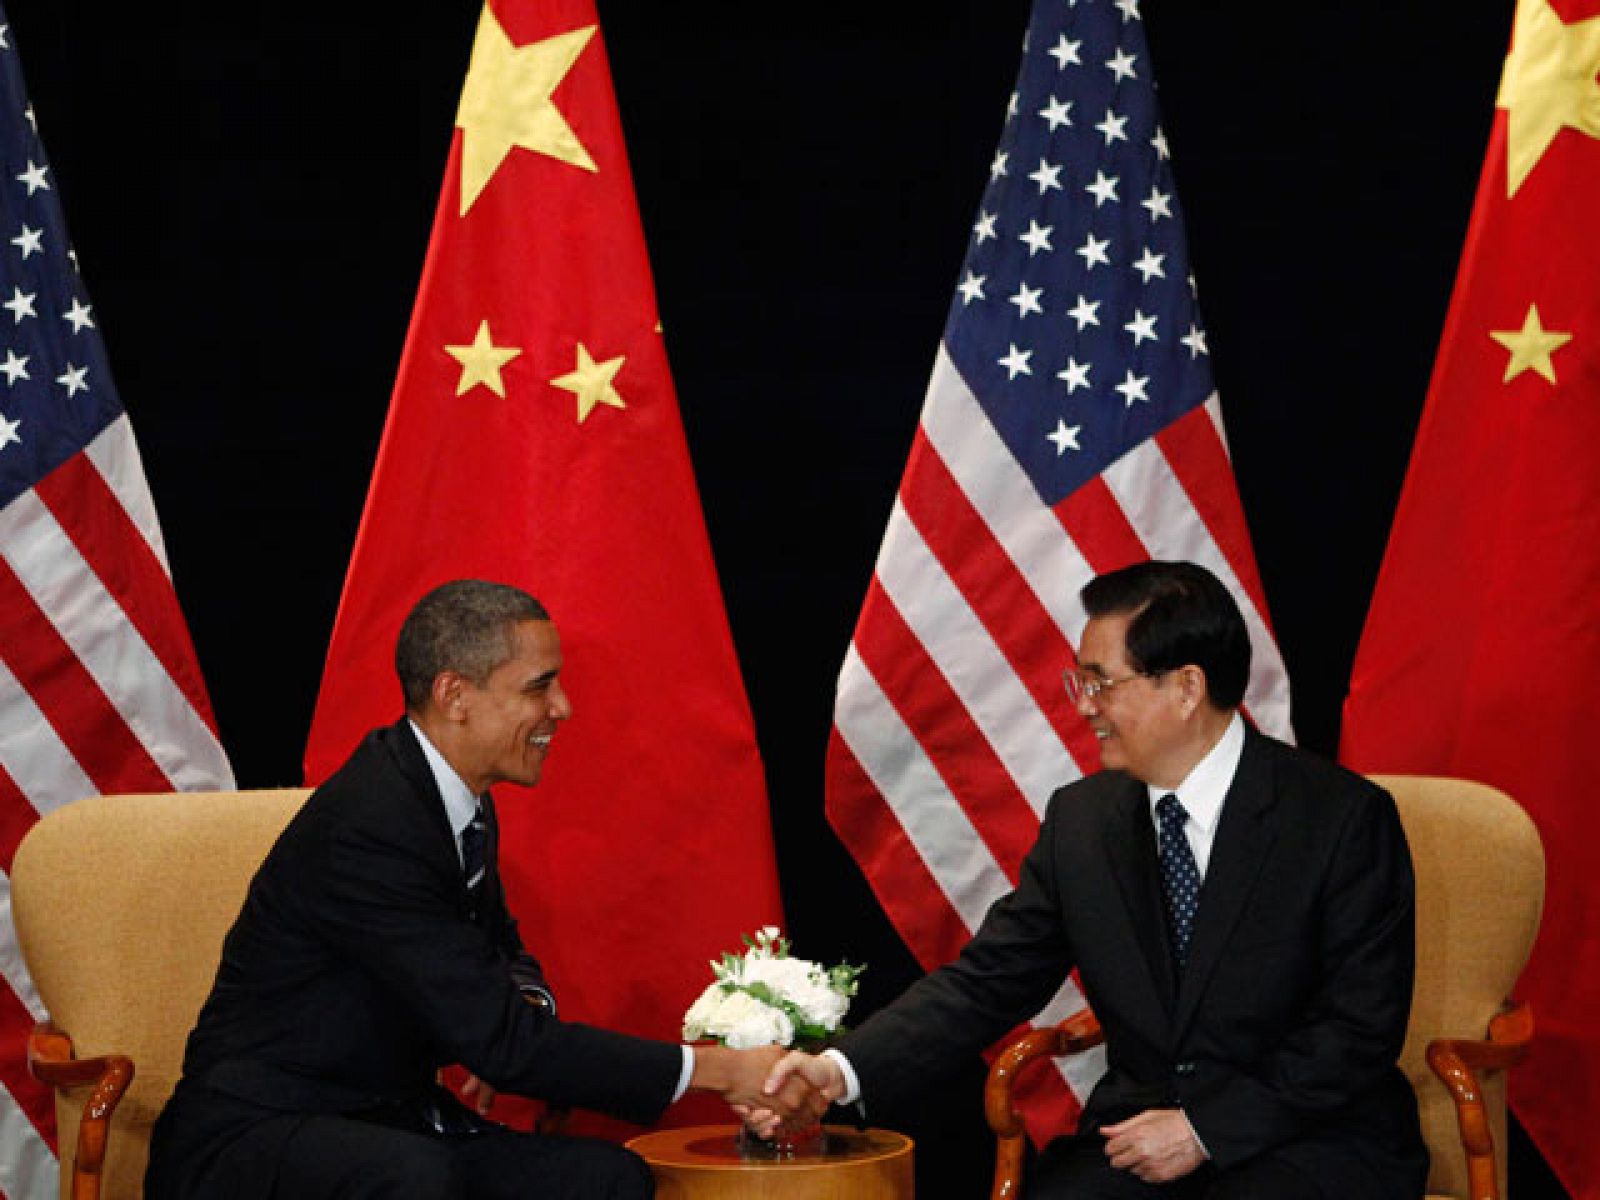 Estados Unidos considera que el yuan cotiza por debajo de su valor real. En un encuentro entre el presidente chino y su colega estadounidense, Hu Jintao ha reiterado a Barack Obama su compromiso de una fluctuación más libre de la moneda china.